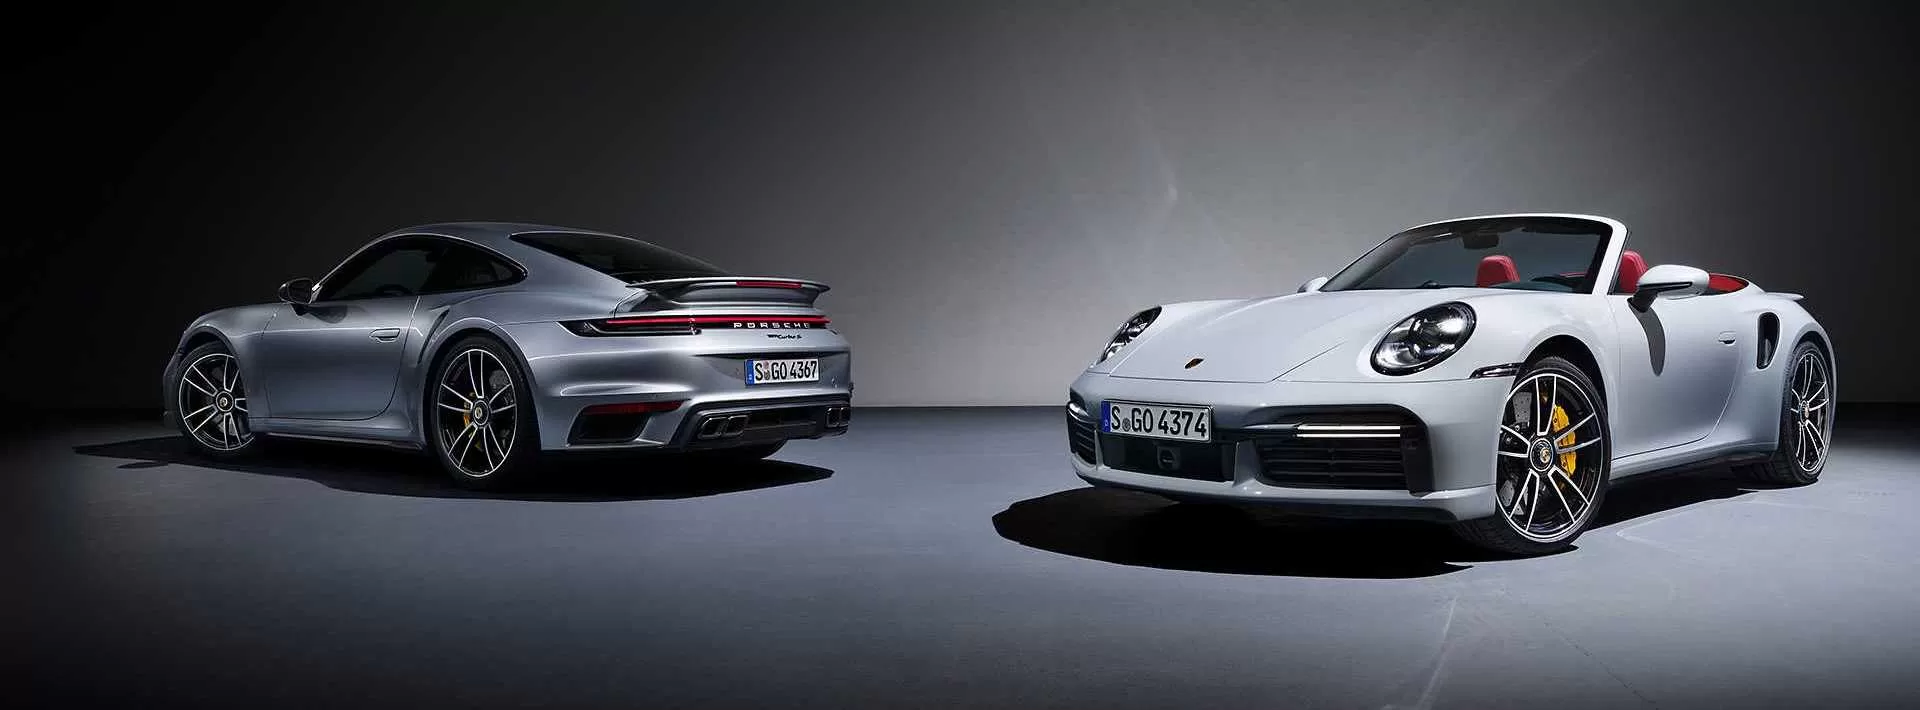 В Цуффенхаузене построили 911 Turbo S, который претендует на звание самого динамичного «Порше» всех времен.